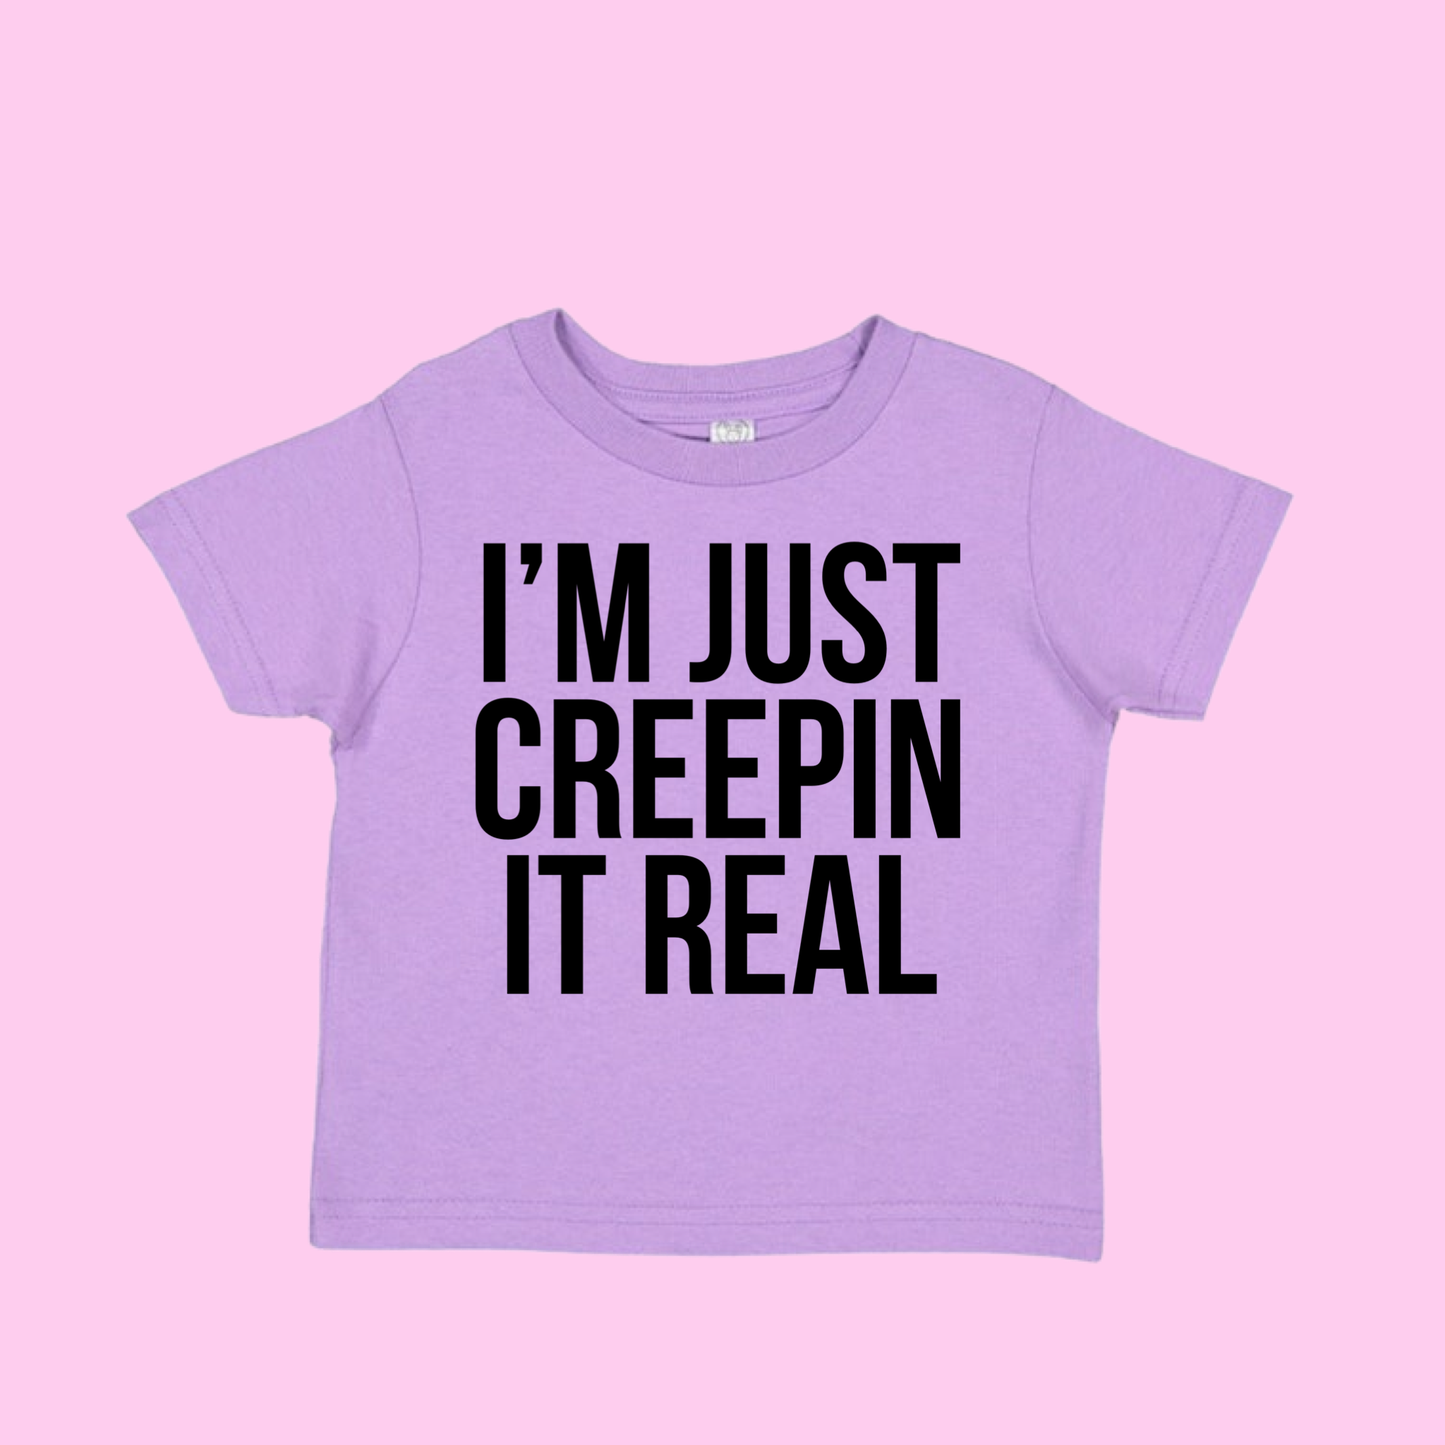 Creepin’ it real